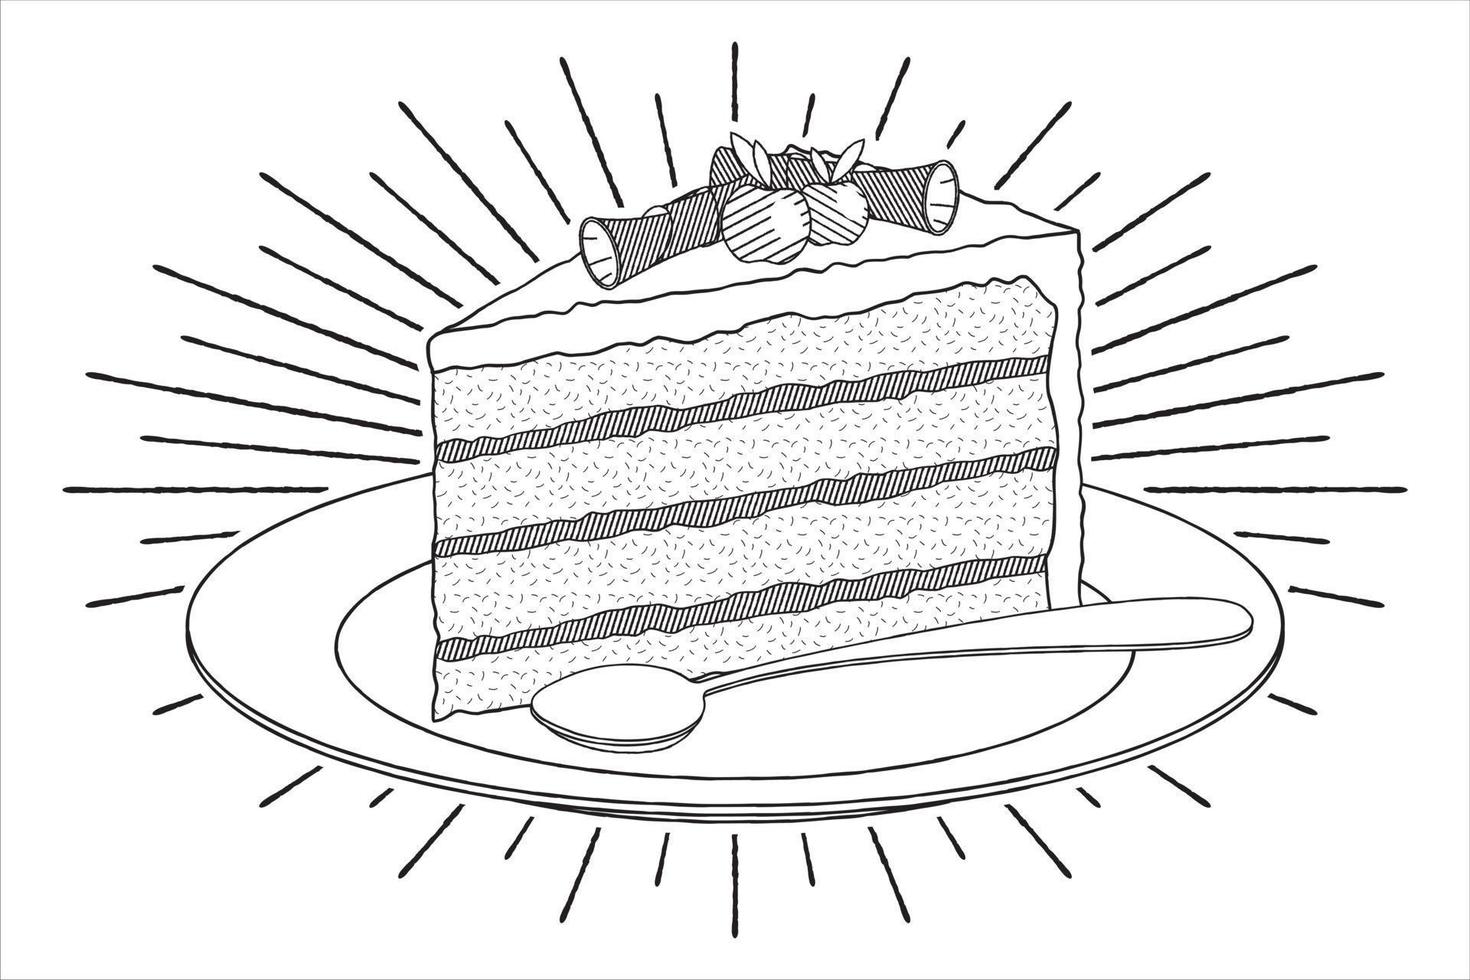 sobremesa em um prato - ilustração de contorno vetor